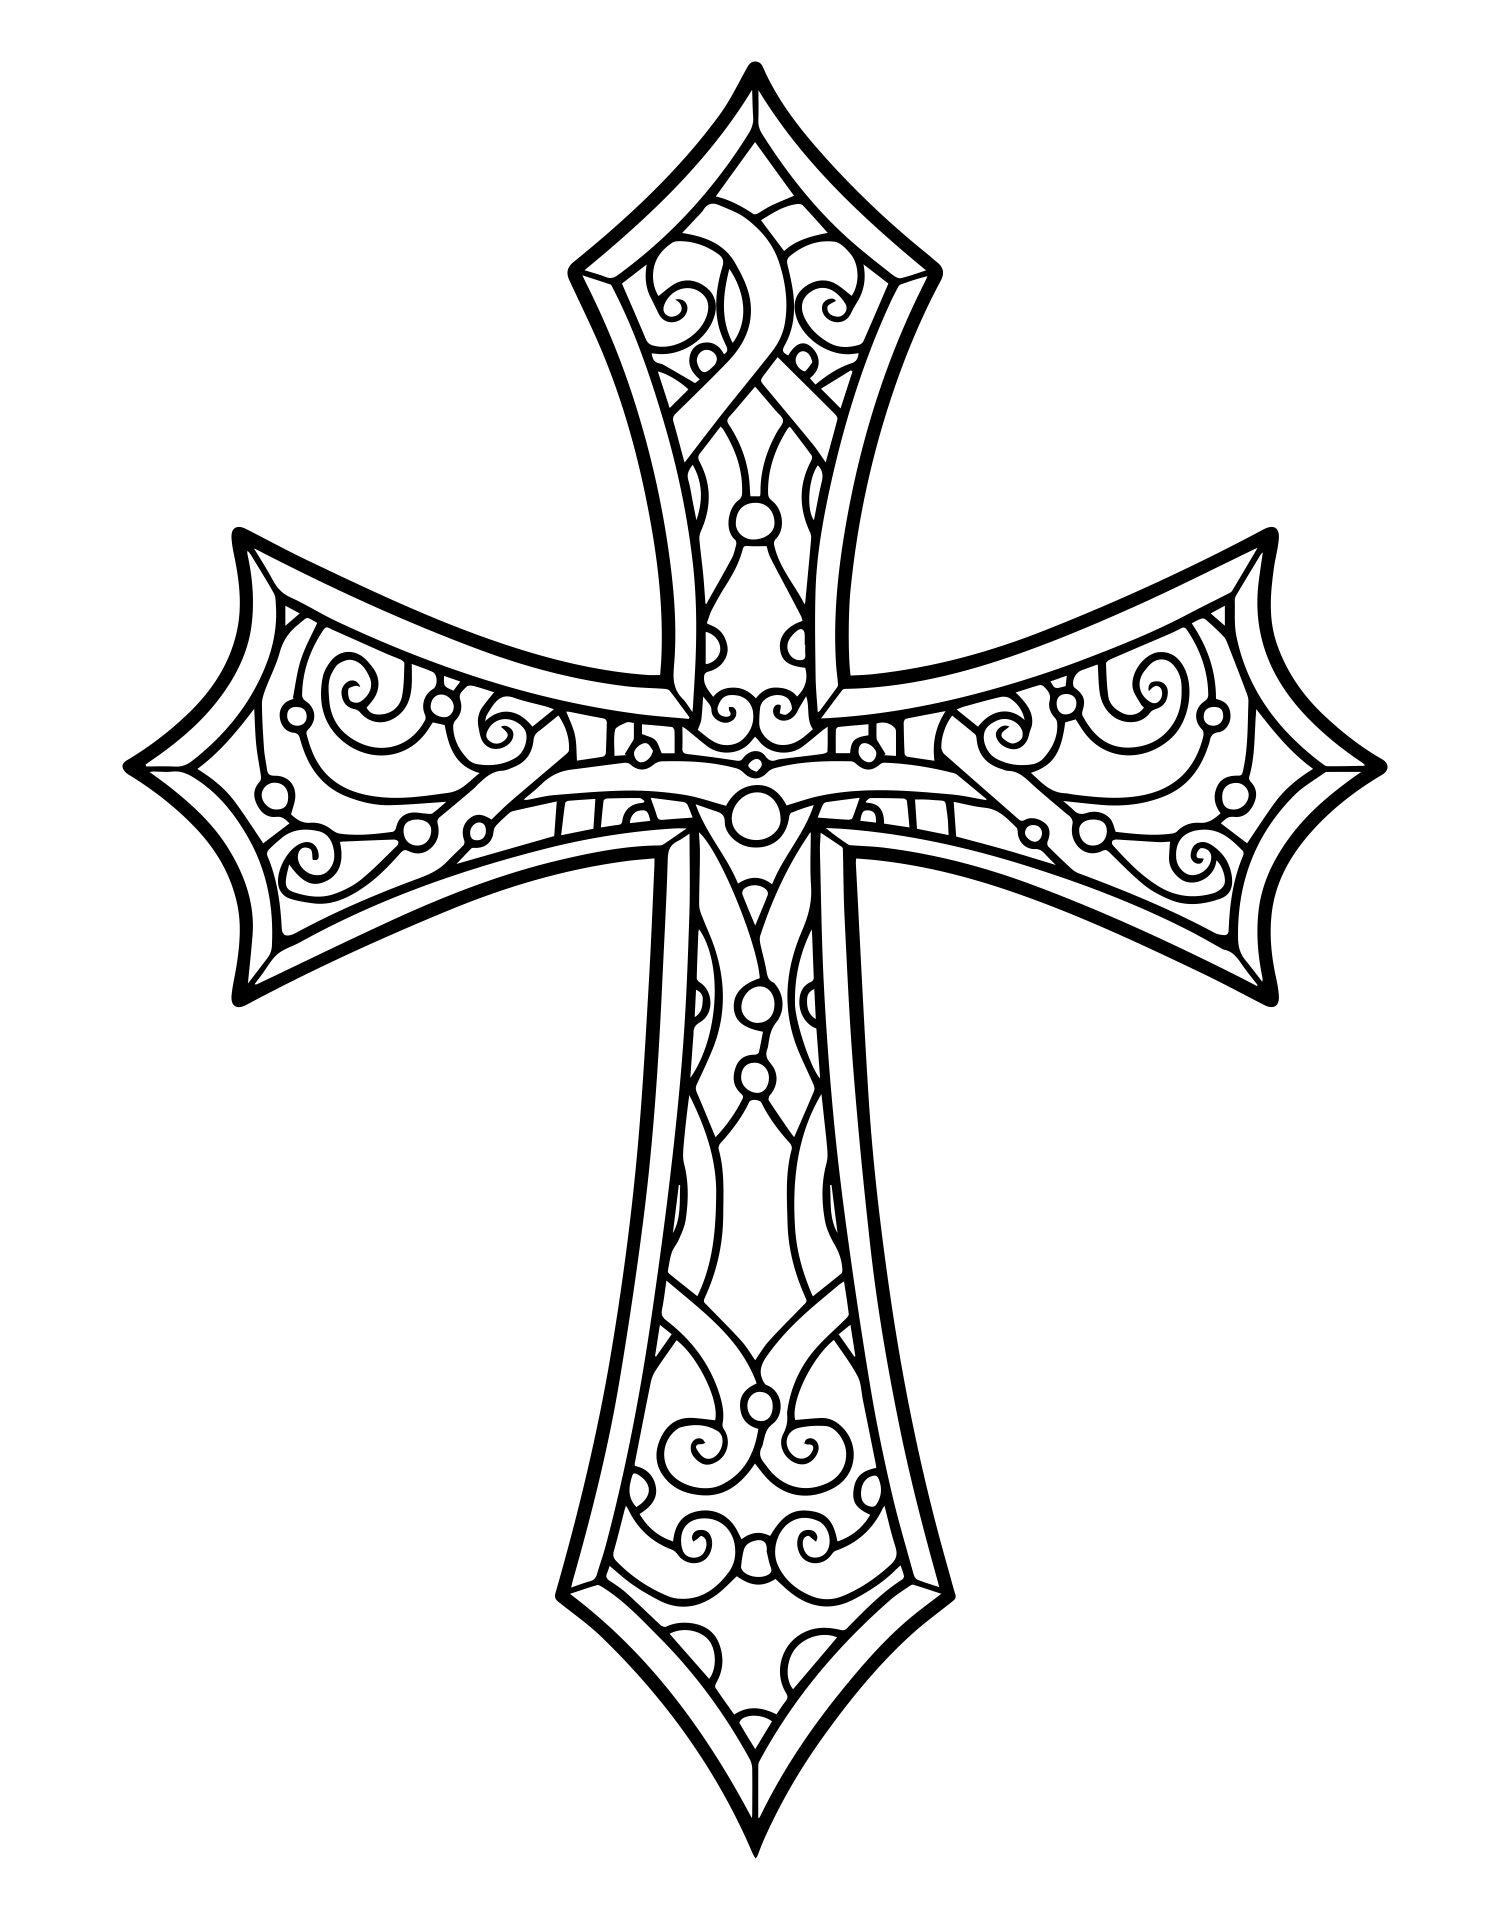 Crochet Bookmark Patterns for Crosses